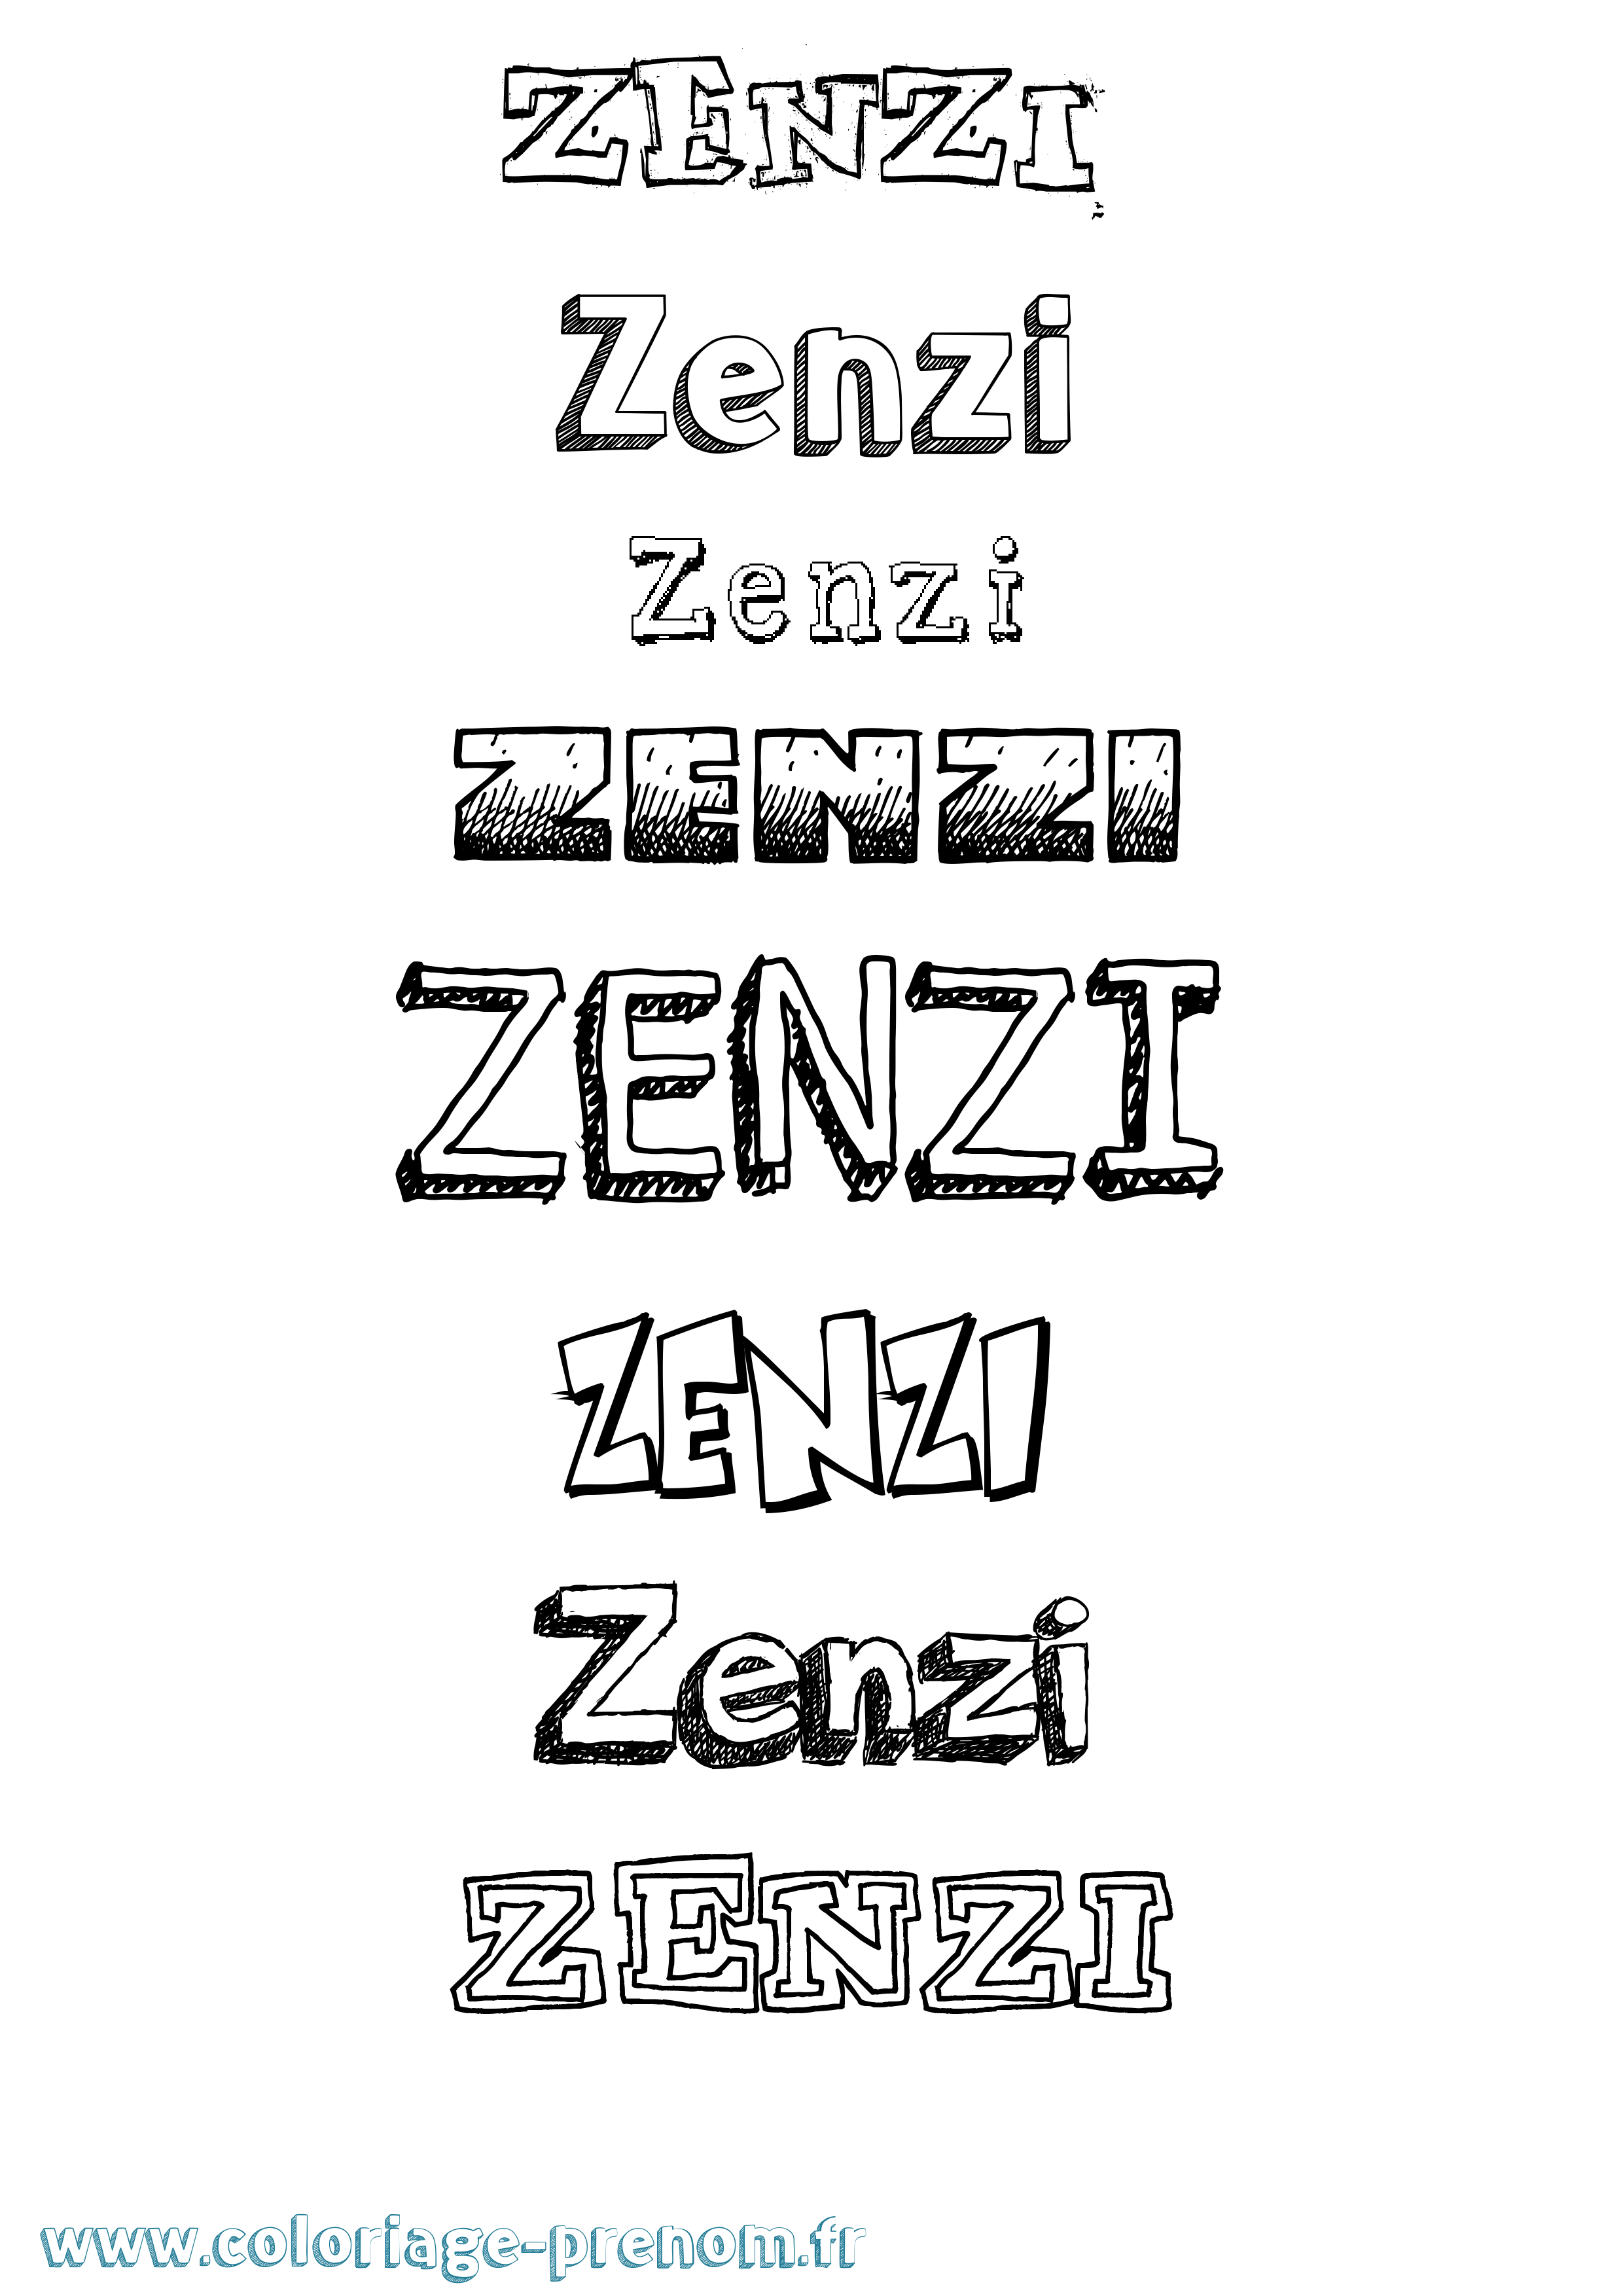 Coloriage prénom Zenzi Dessiné